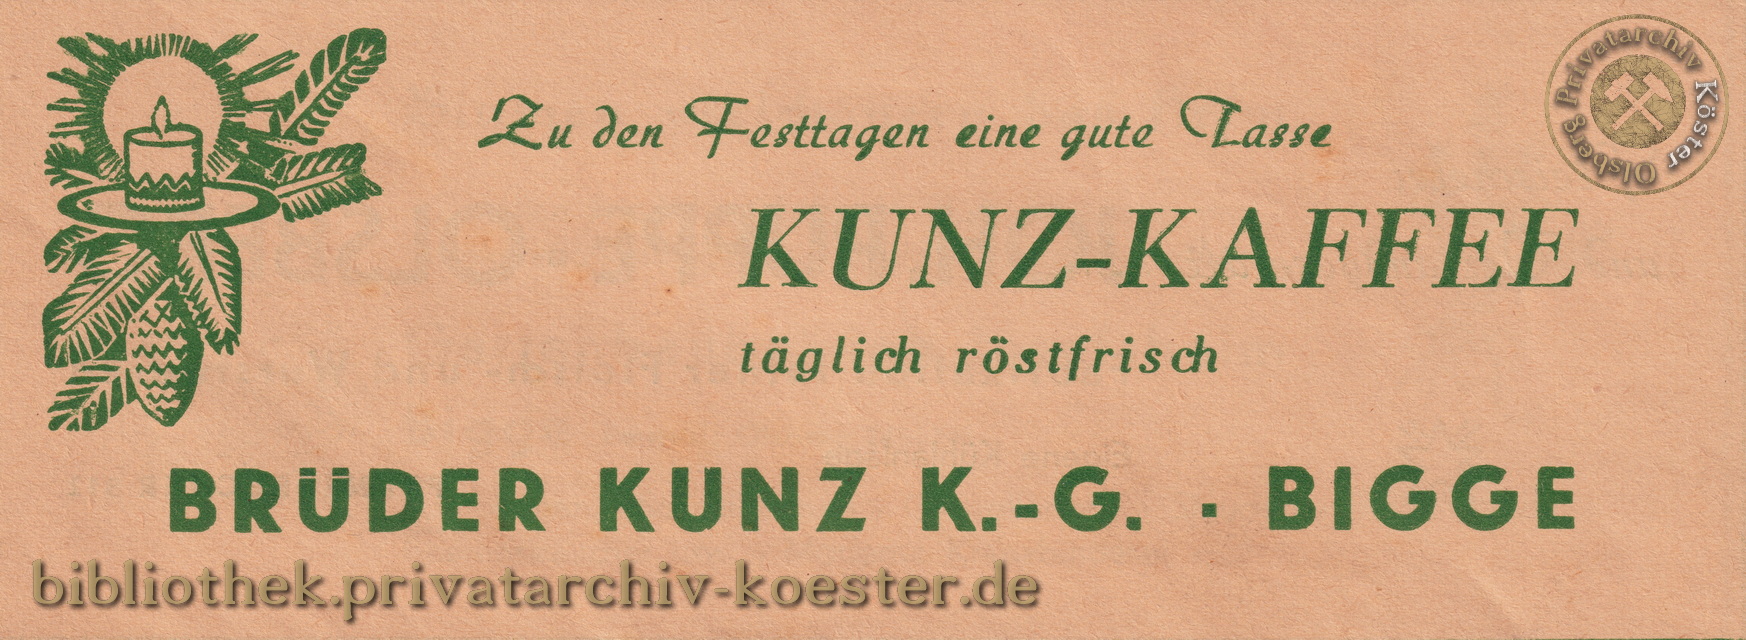 Werbeanzeige Brüder Kunz Bigge 1956